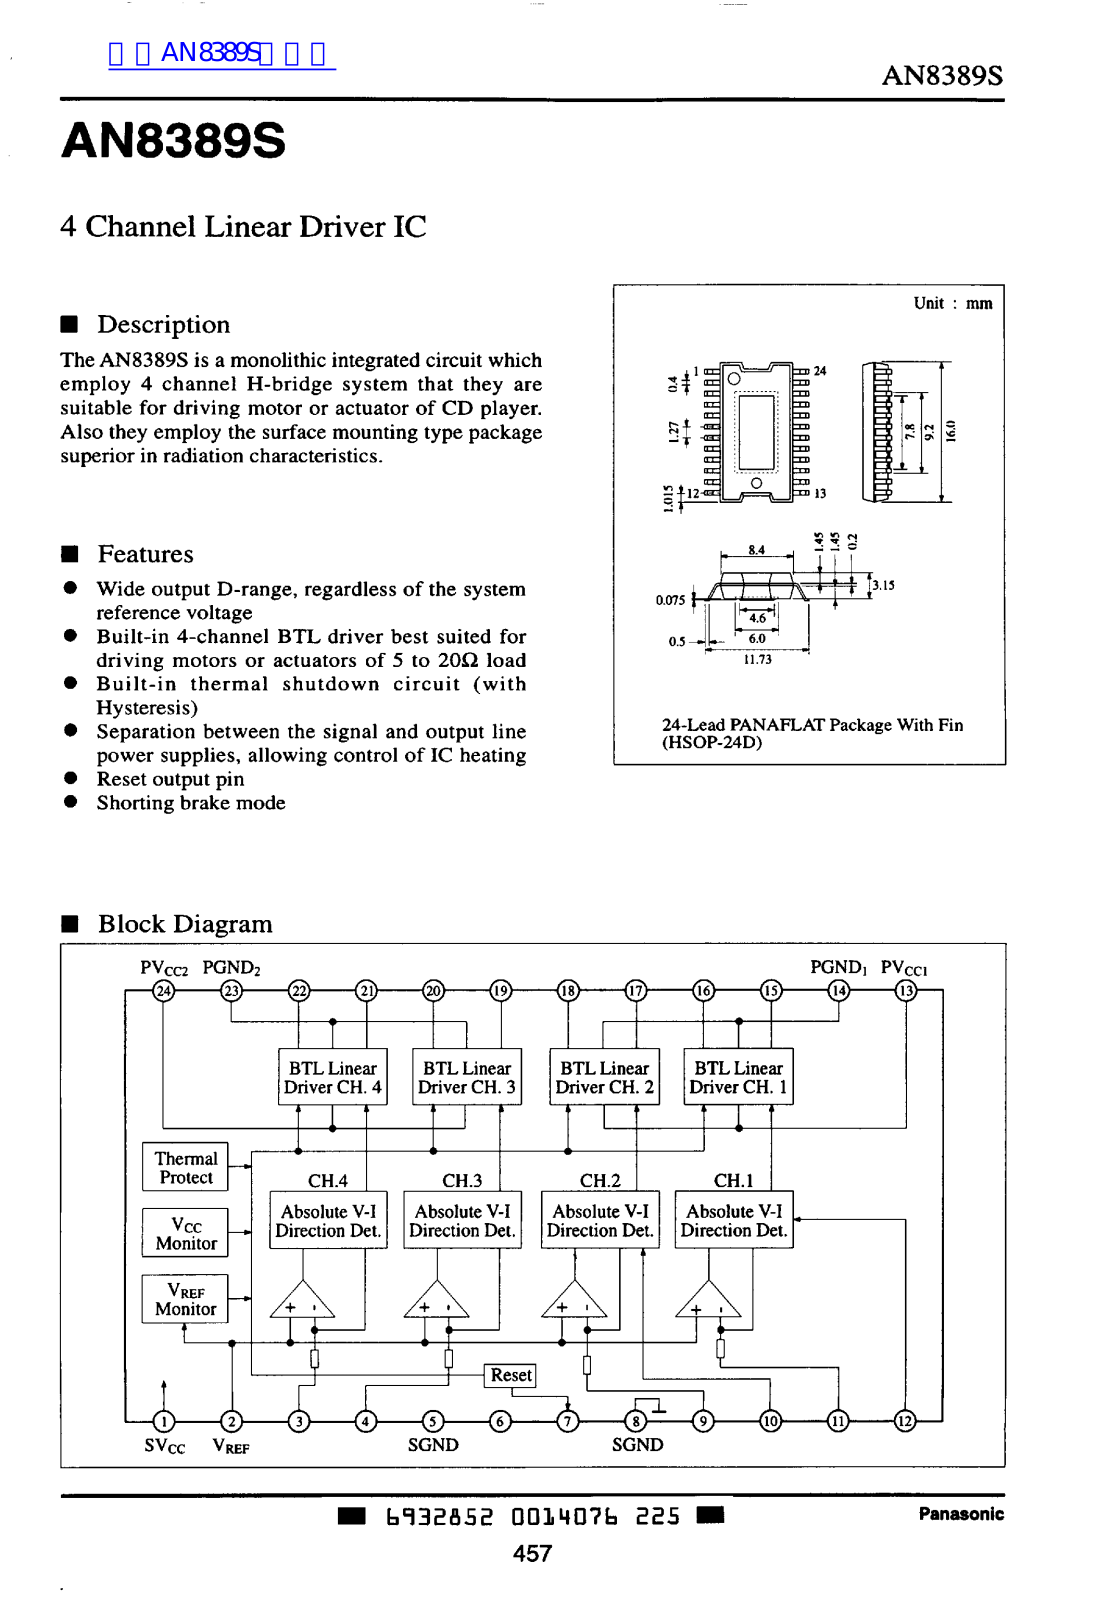 Panasonic AN8389S User Manual